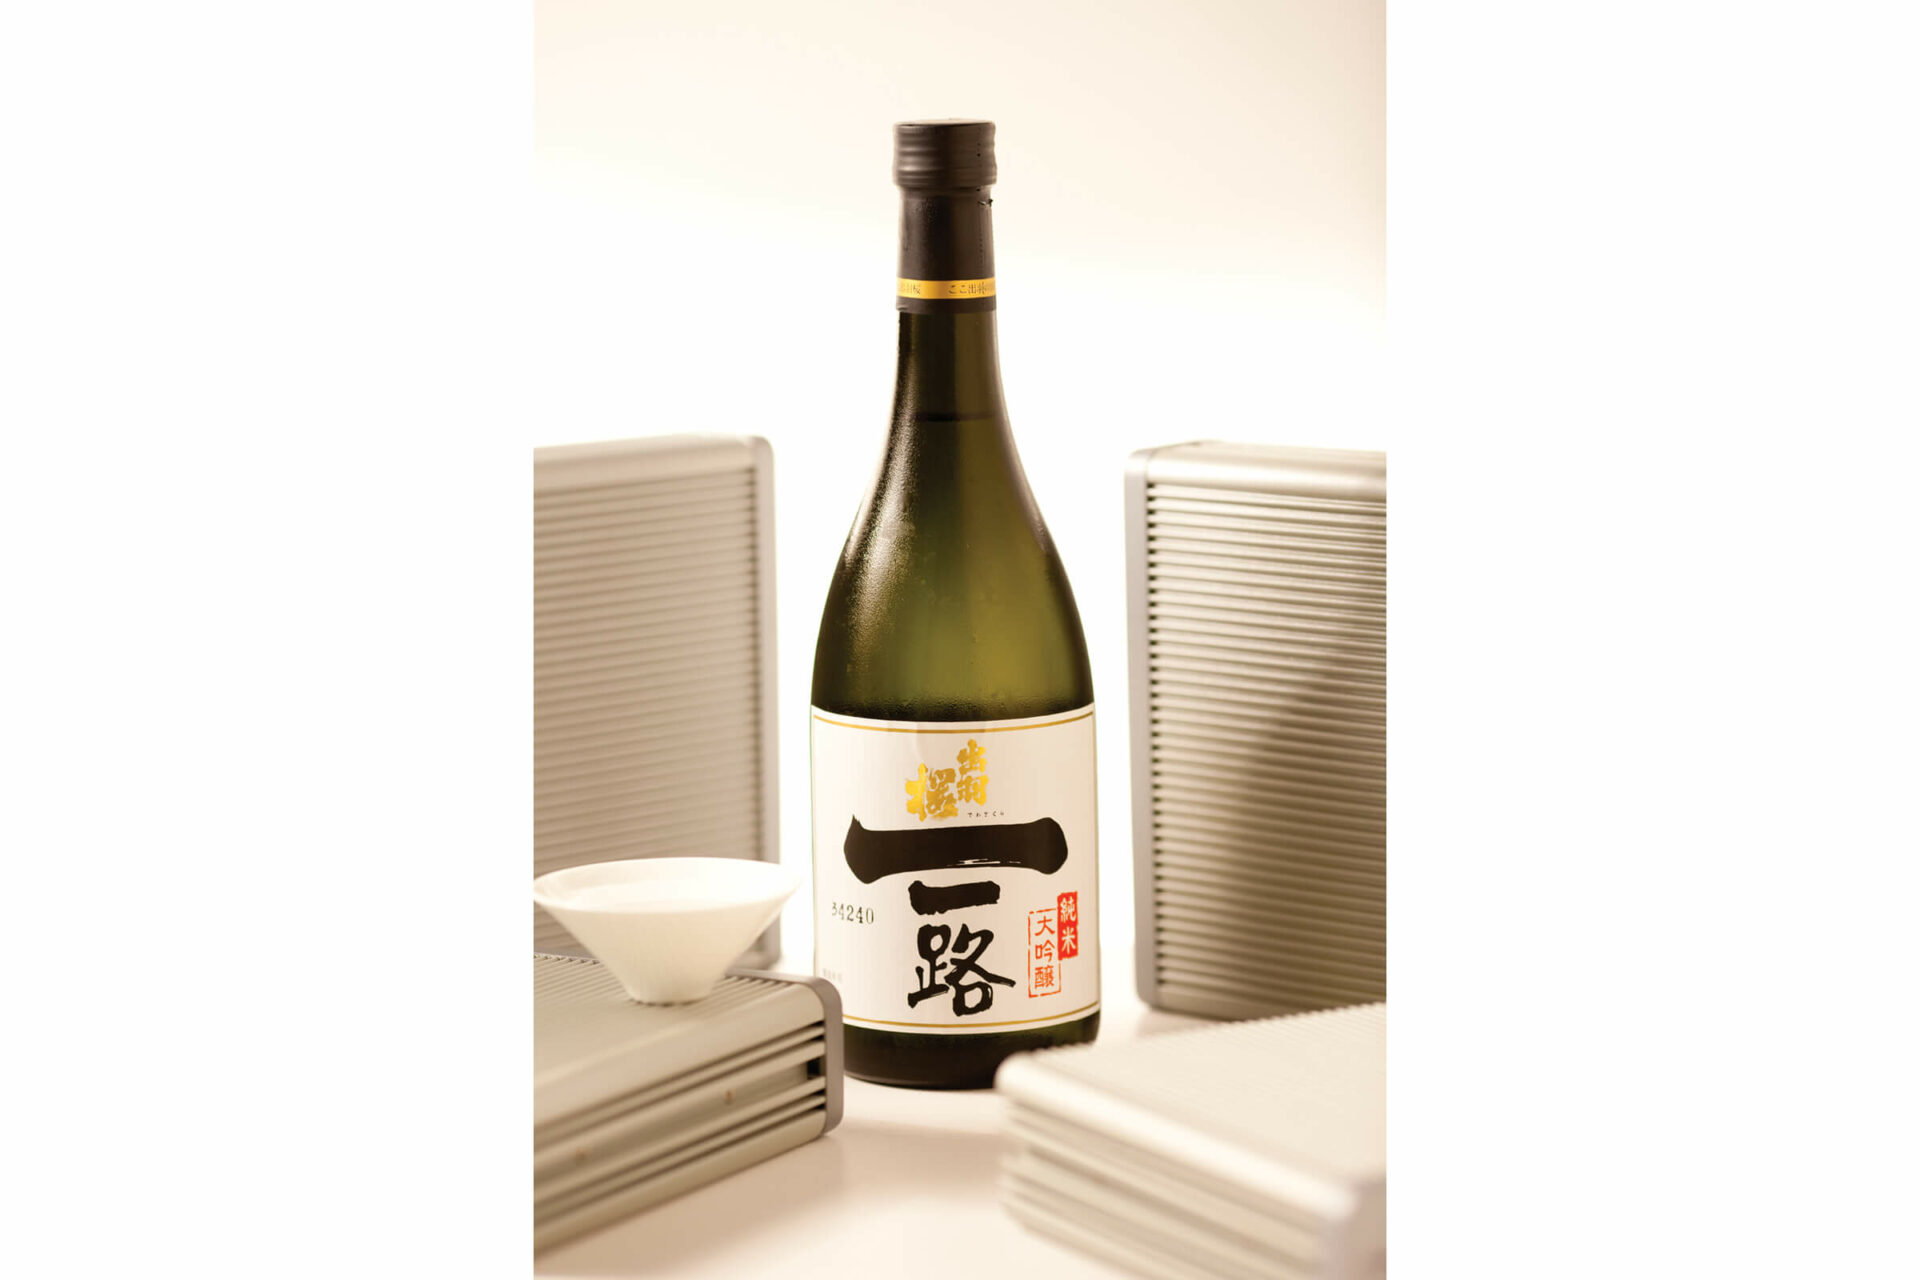 Dewazakura “Ichiro” bottle